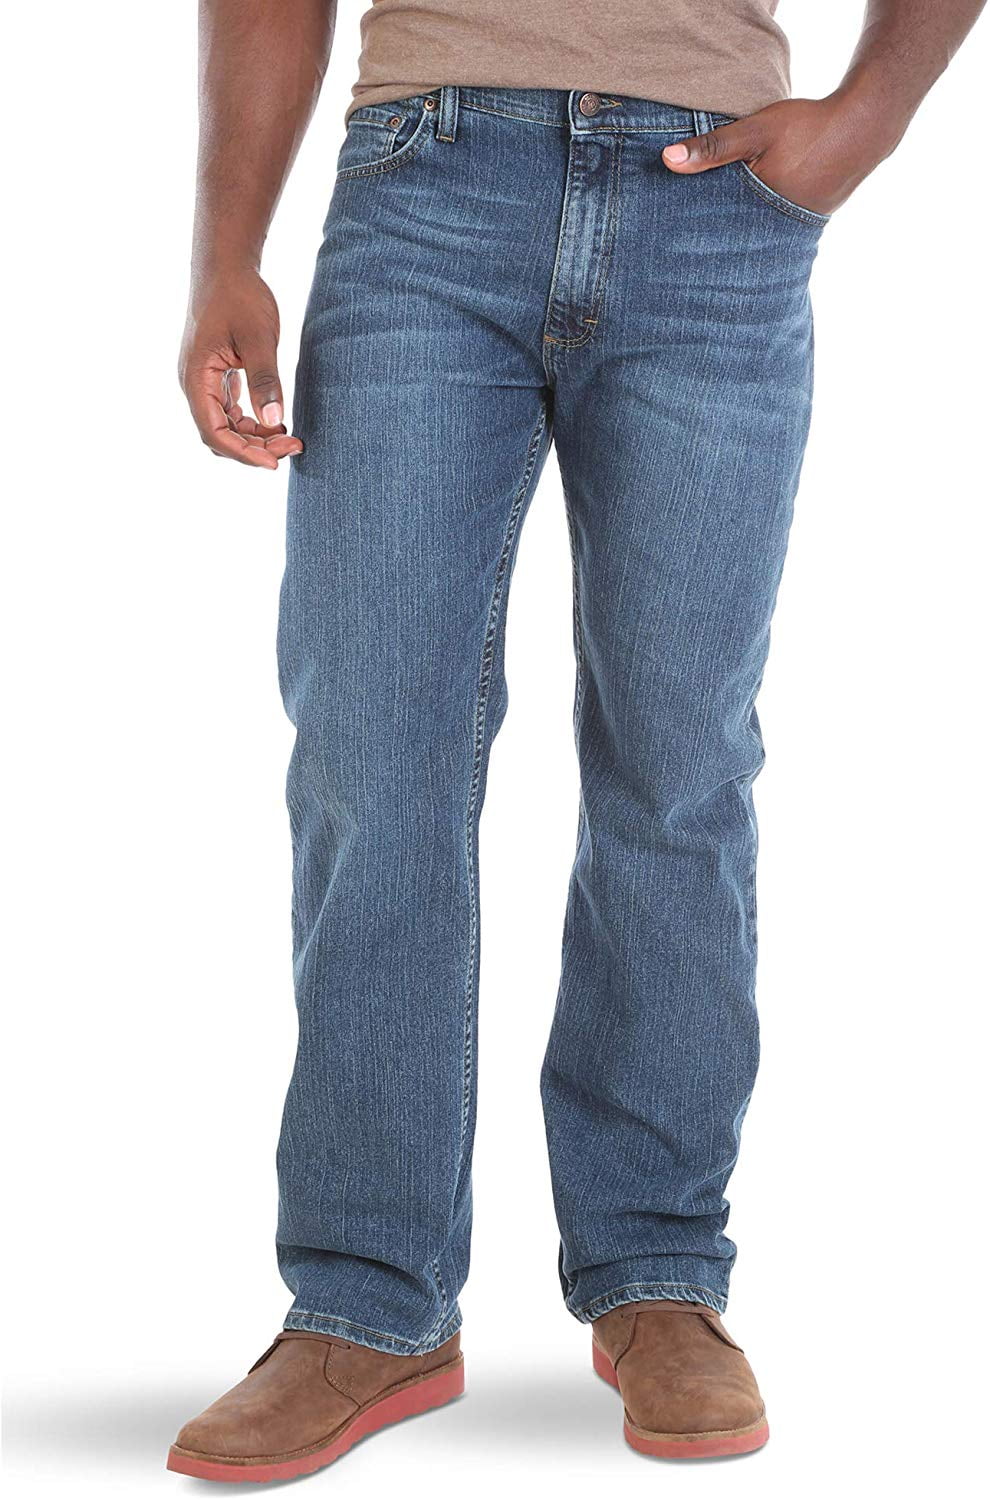 Wrangler - Mens Jeans Ocean 36x29 Denim Straight Leg Stretch 36 ...